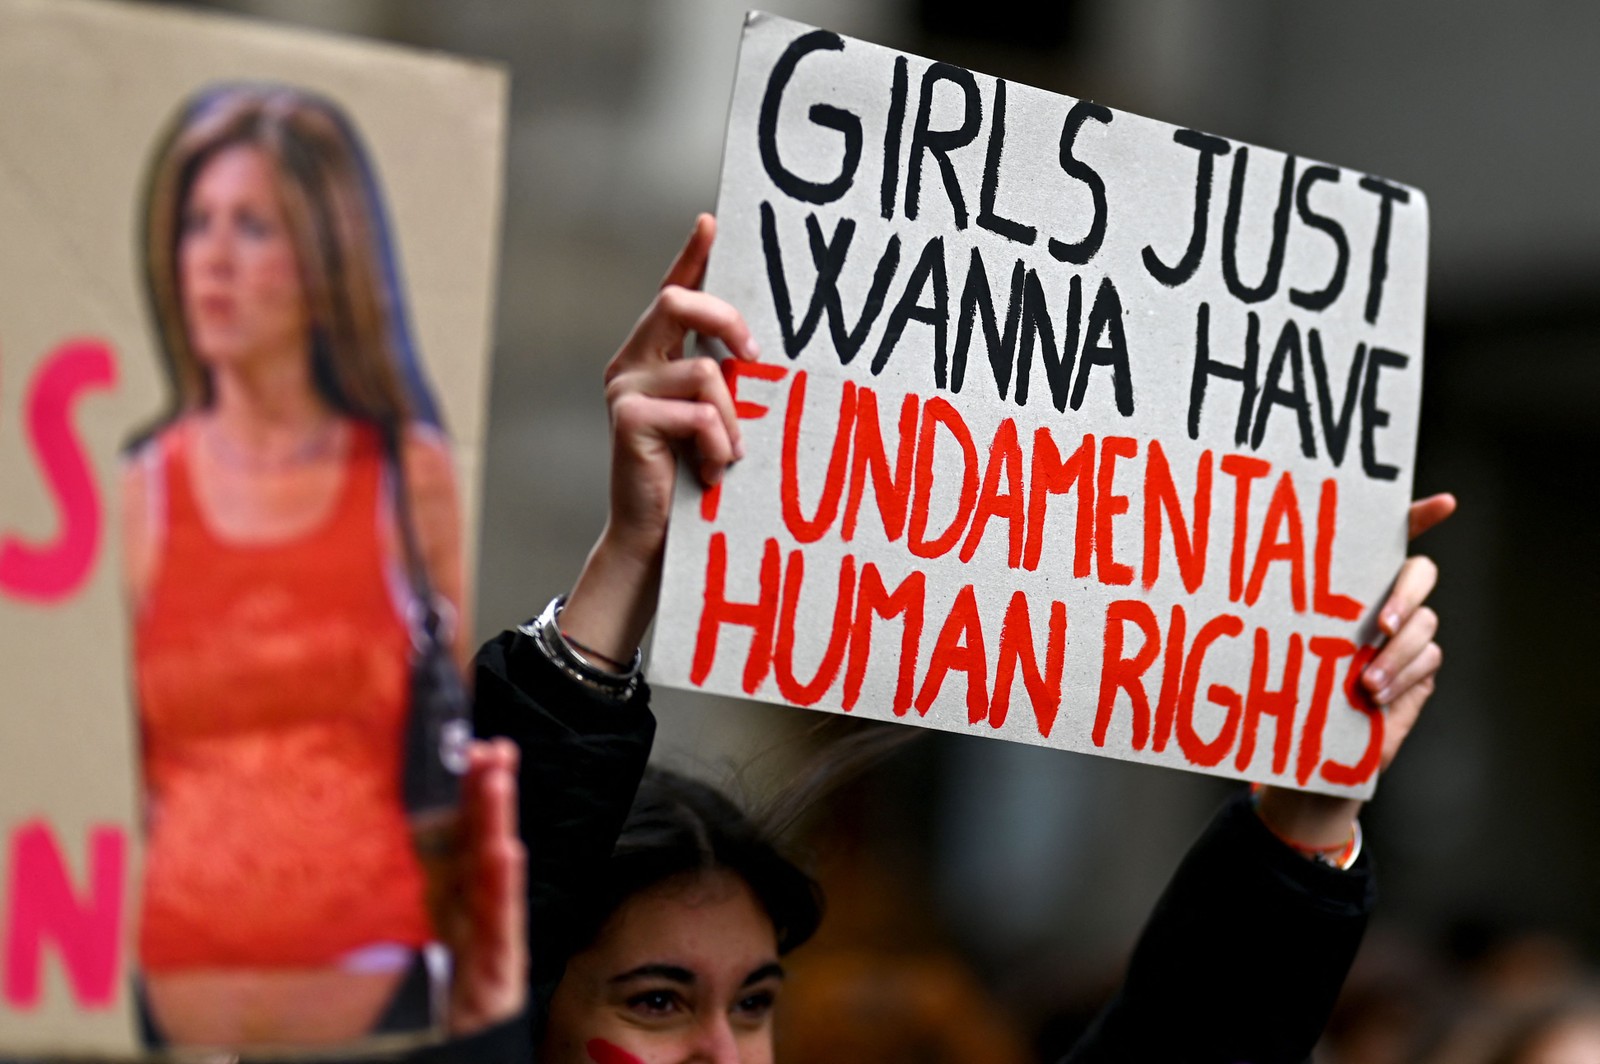 Referenciando a icônica música da cantora Cyndi Lauper, uma manifestante segura o cartaz: "Girls just wanna have fun(damental human rights" (Garotas só querem ter direitos humanos básicos) em Milão, Itália — Foto: GABRIEL BOUYS